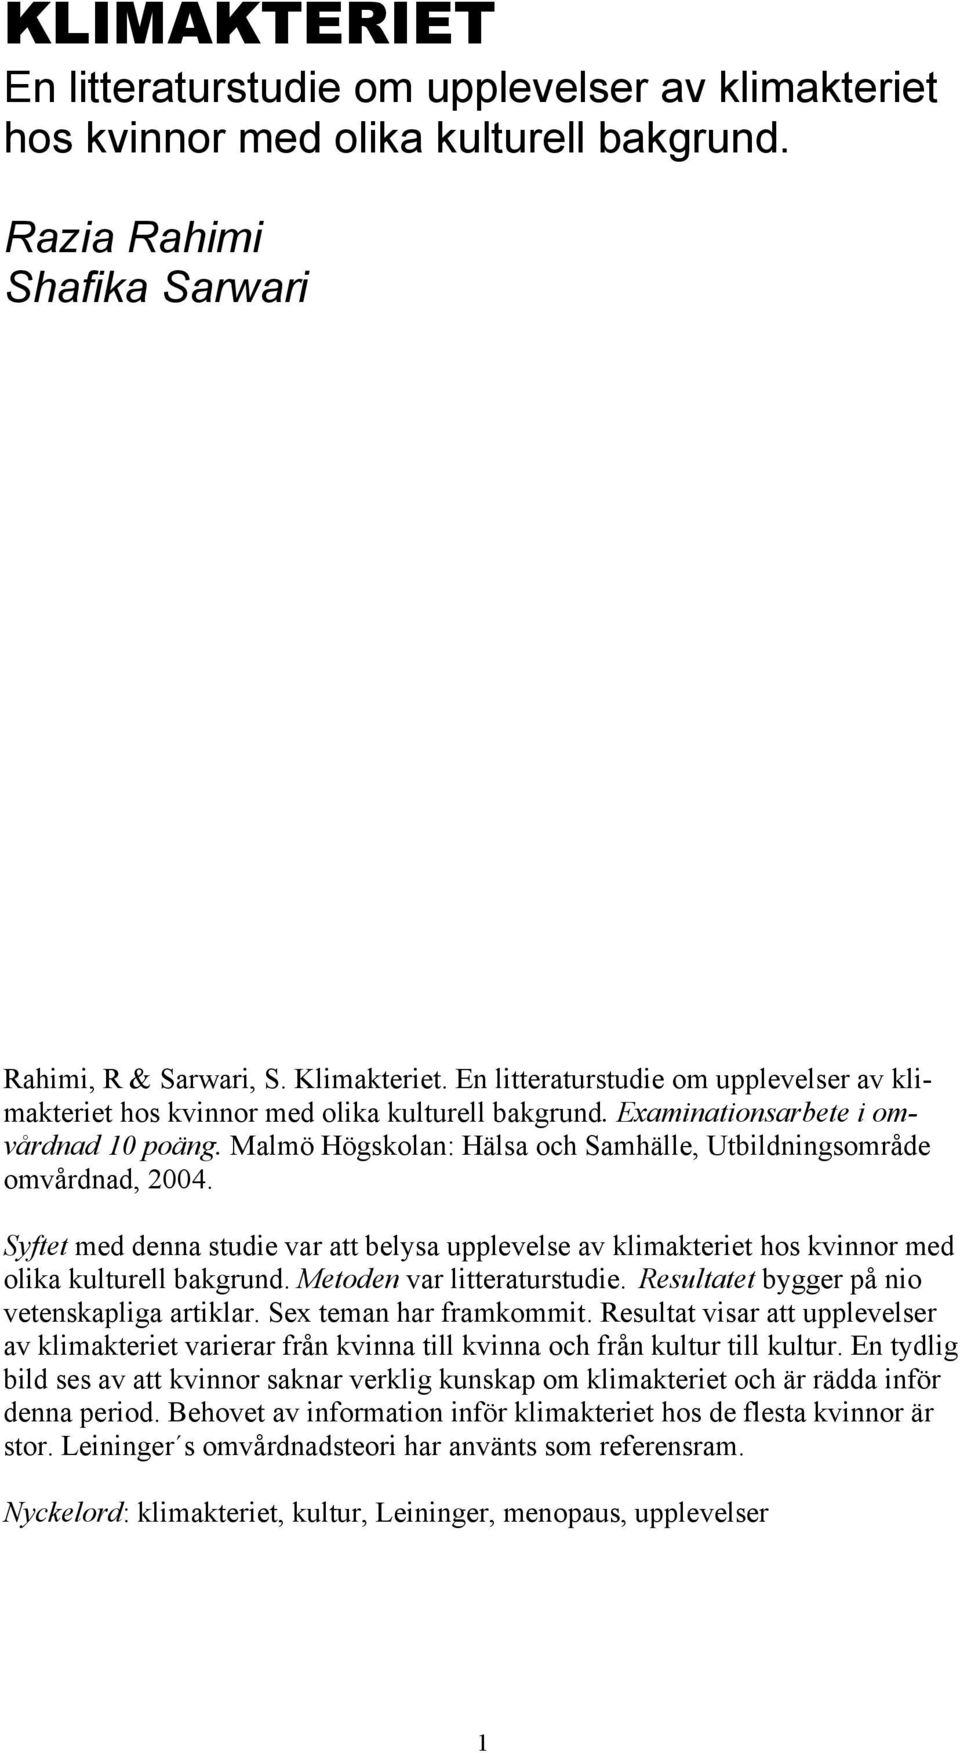 Malmö Högskolan: Hälsa och Samhälle, Utbildningsområde omvårdnad, 2004. Syftet med denna studie var att belysa upplevelse av klimakteriet hos kvinnor med olika kulturell bakgrund.